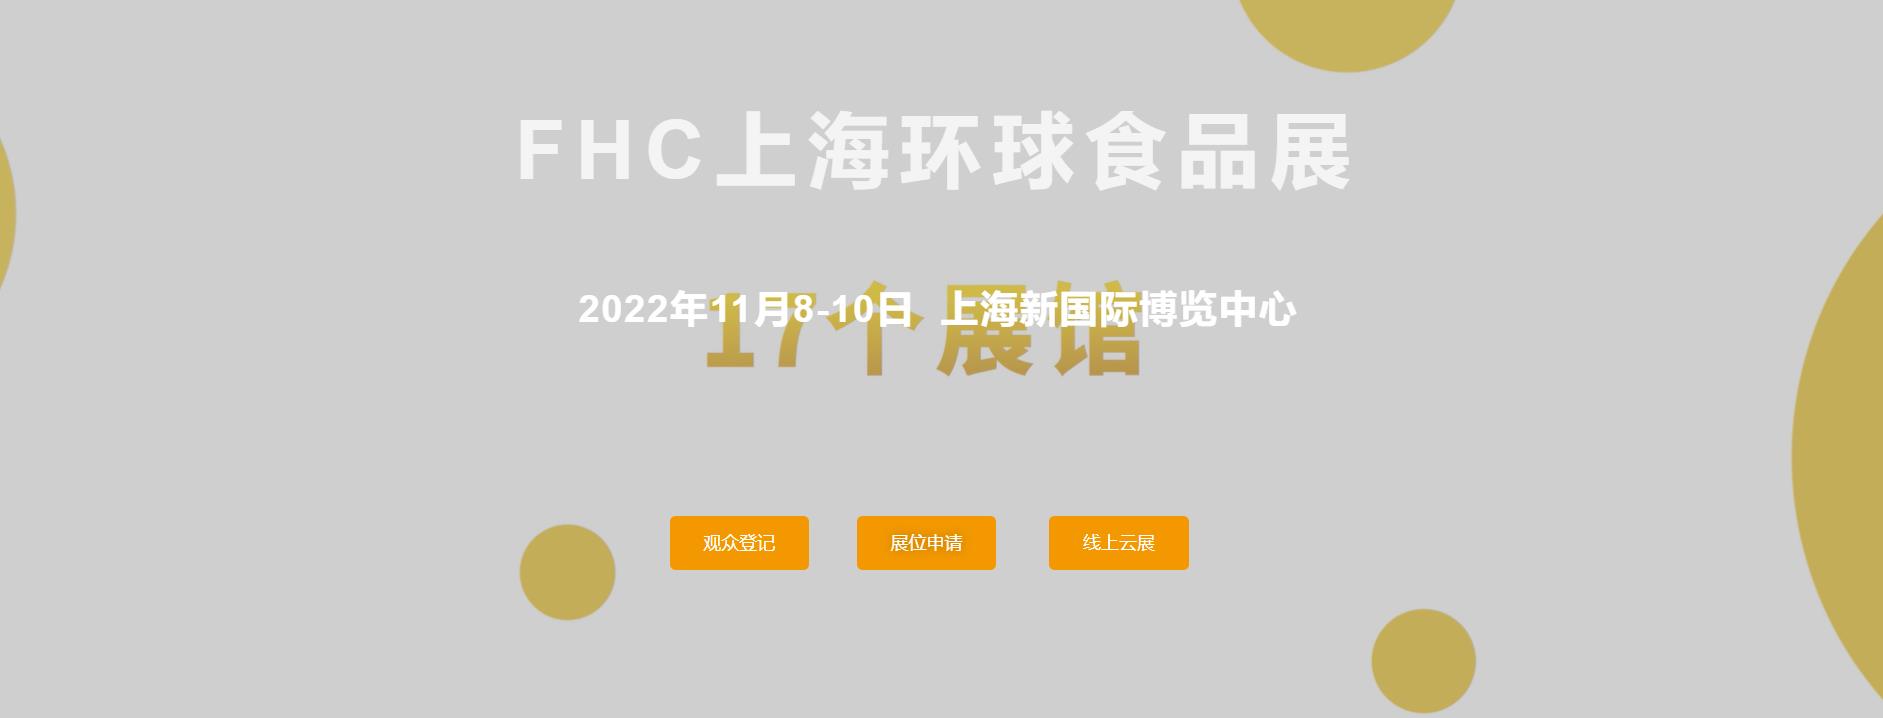 2022环球食品展FHC 上海市FHC2022环球食品展会 山东食品机械展